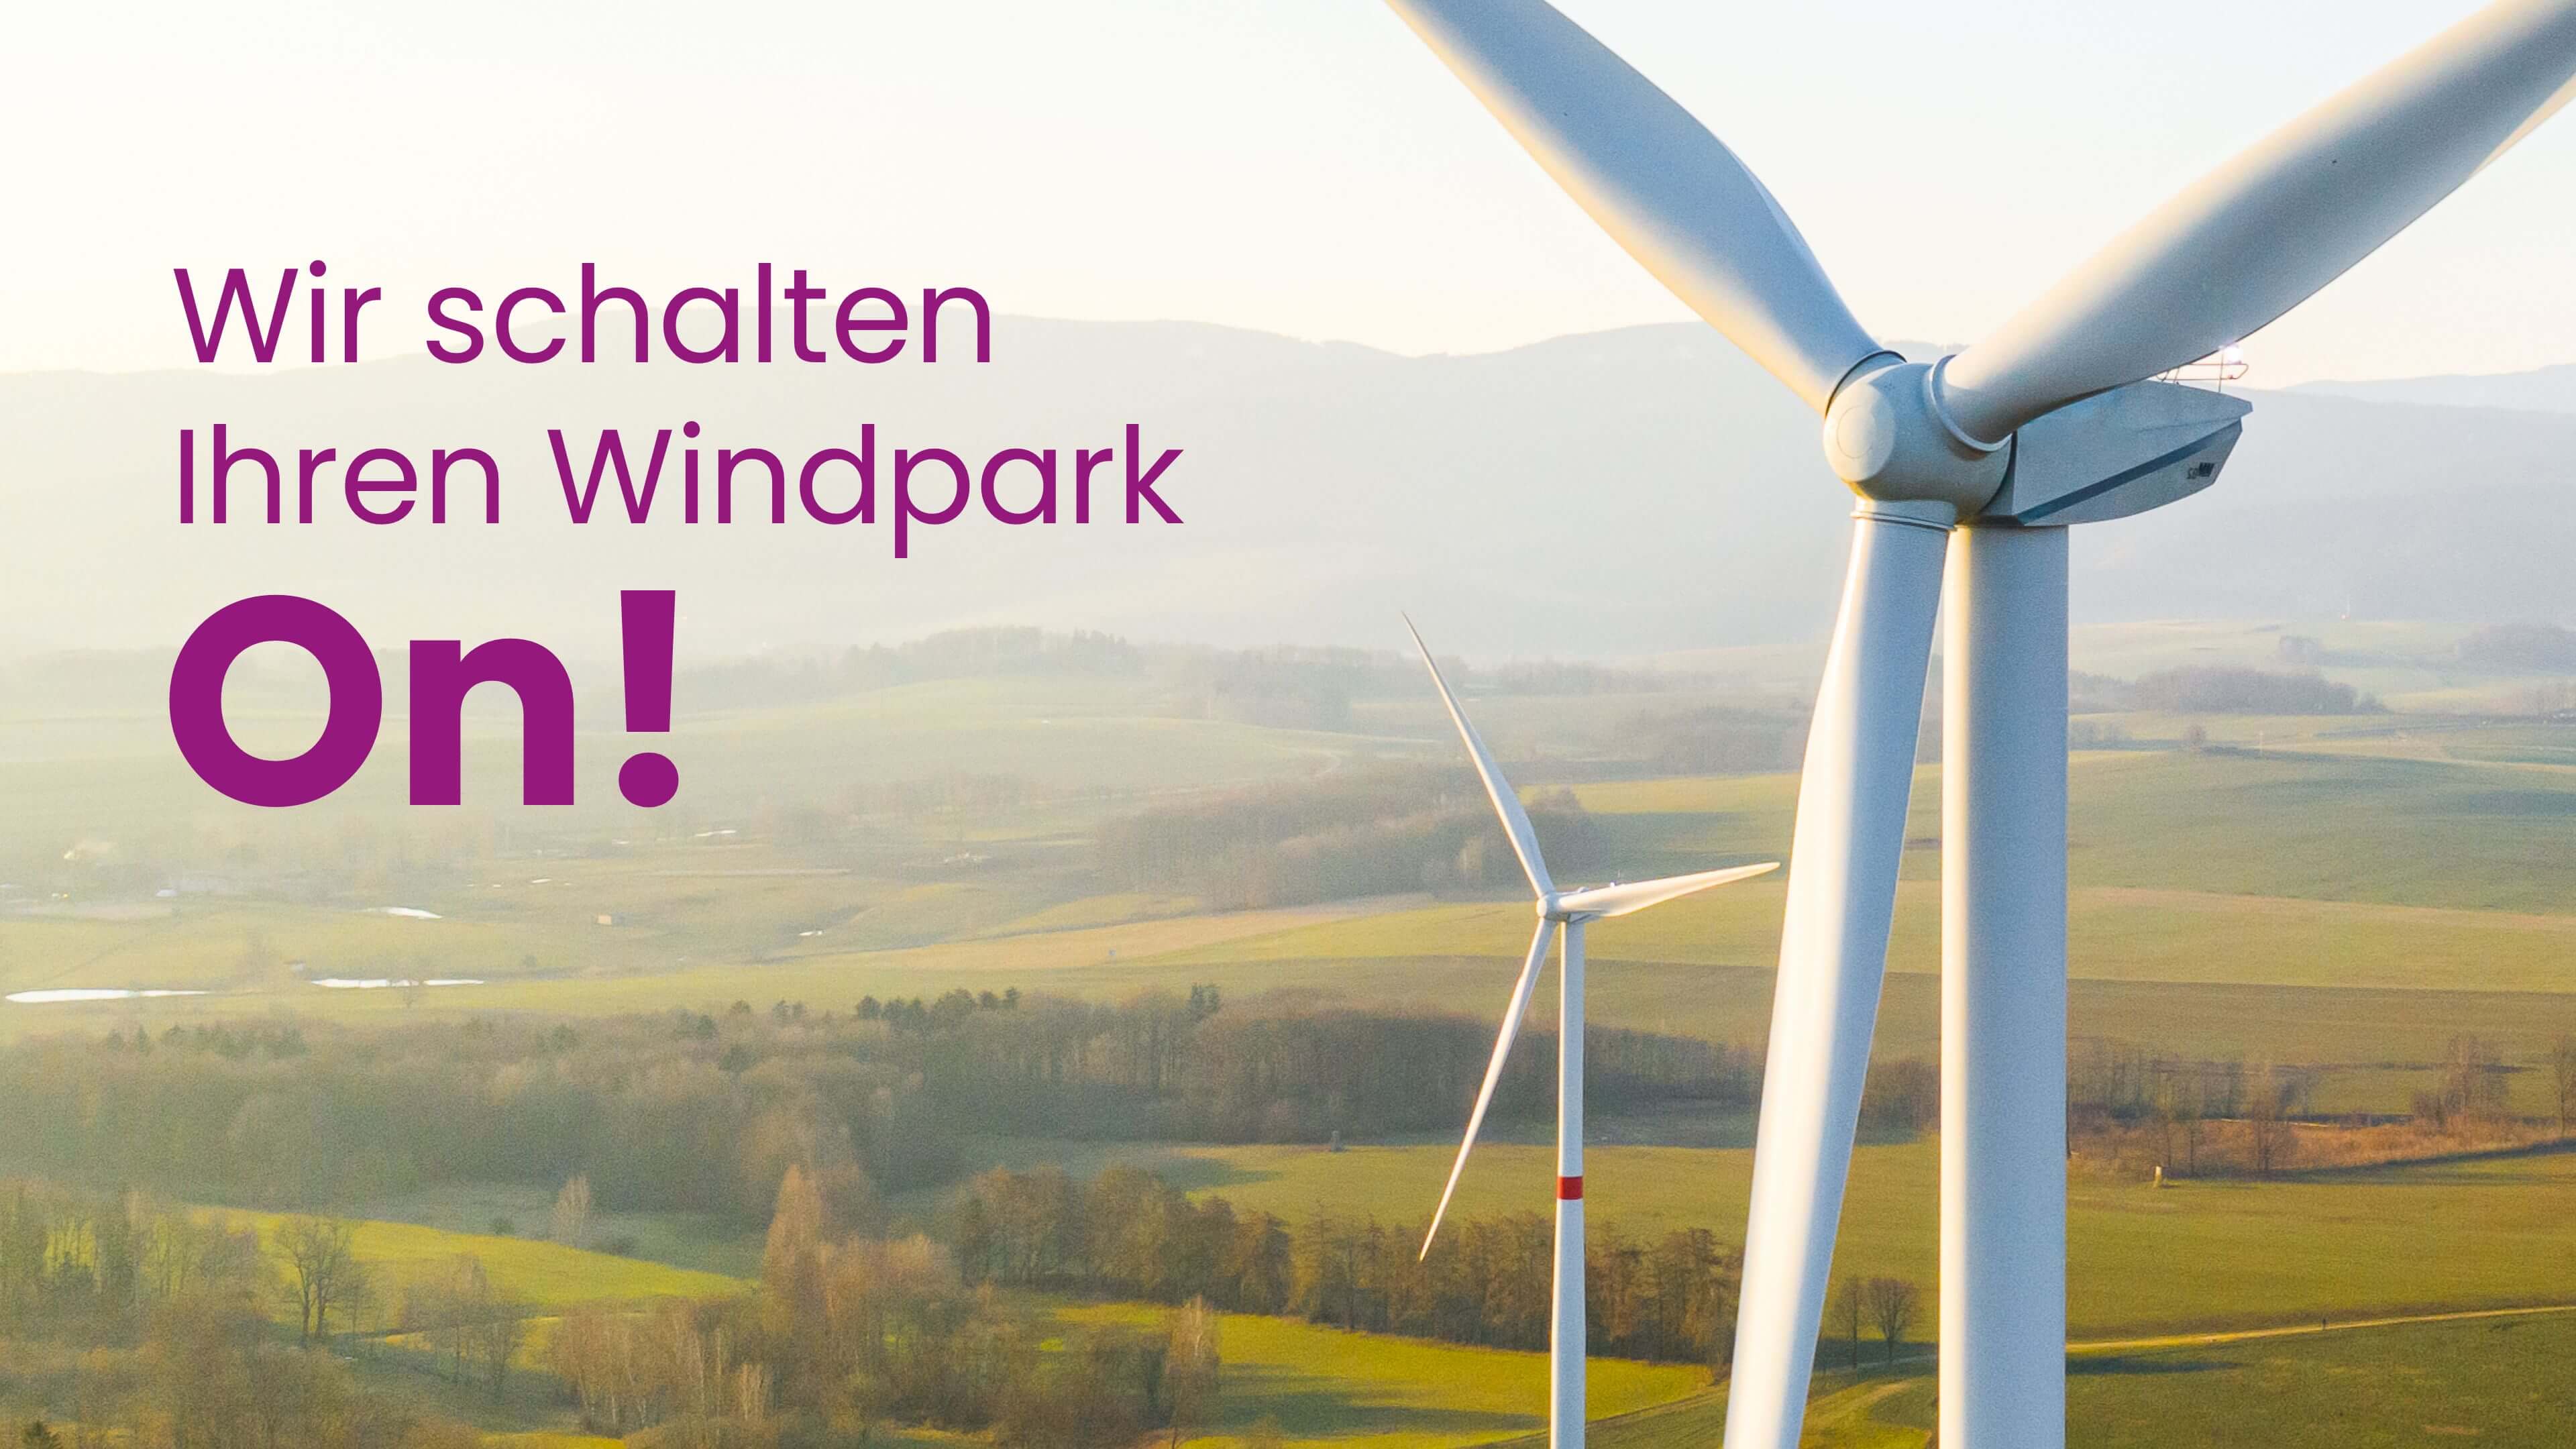 Werbeslogan: Wir schalten ihren Windpark on!